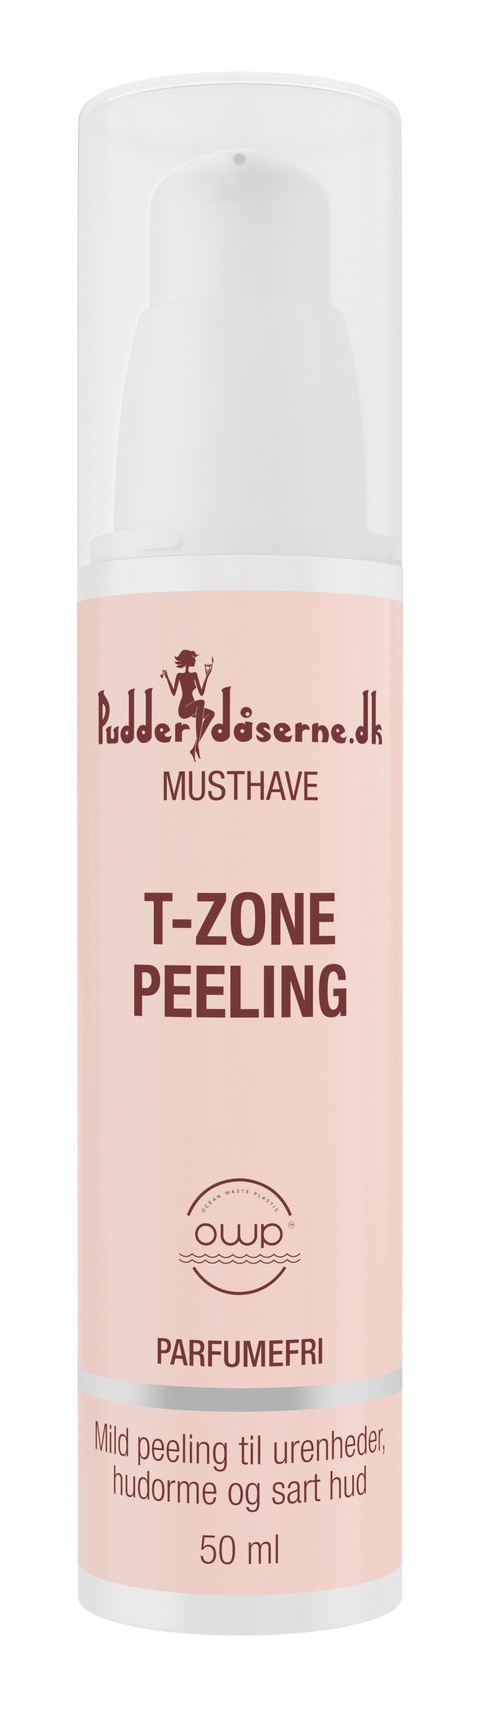 Pudderdåserne T-Zone Peeling